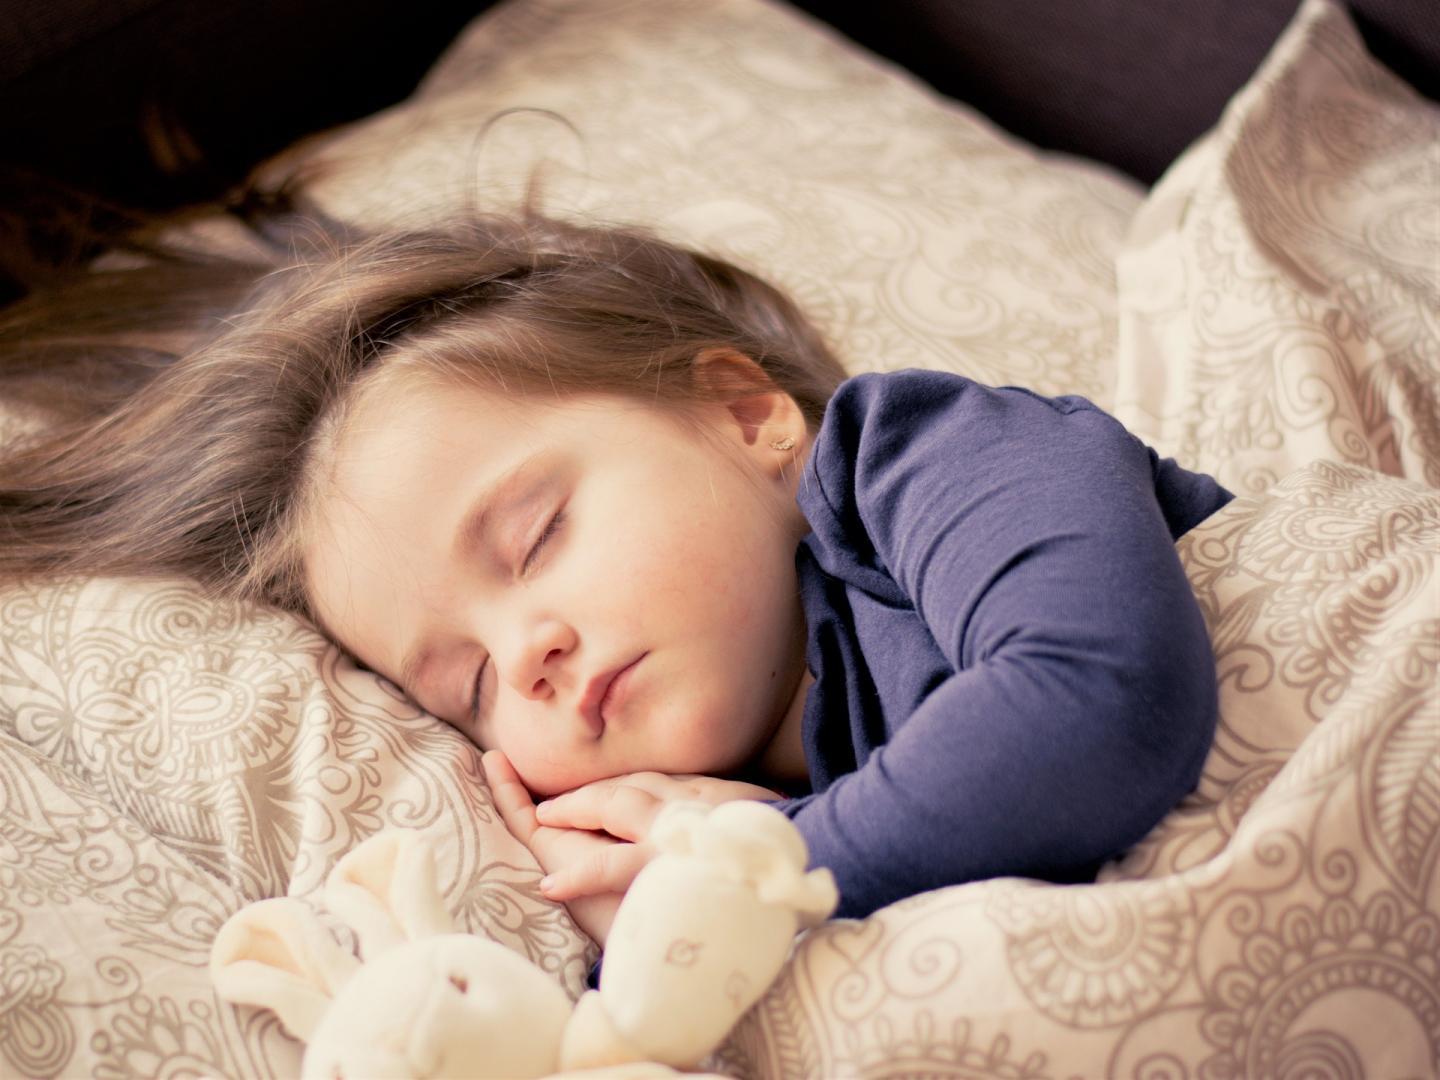  Tények, amiket jó tudni az alvásról